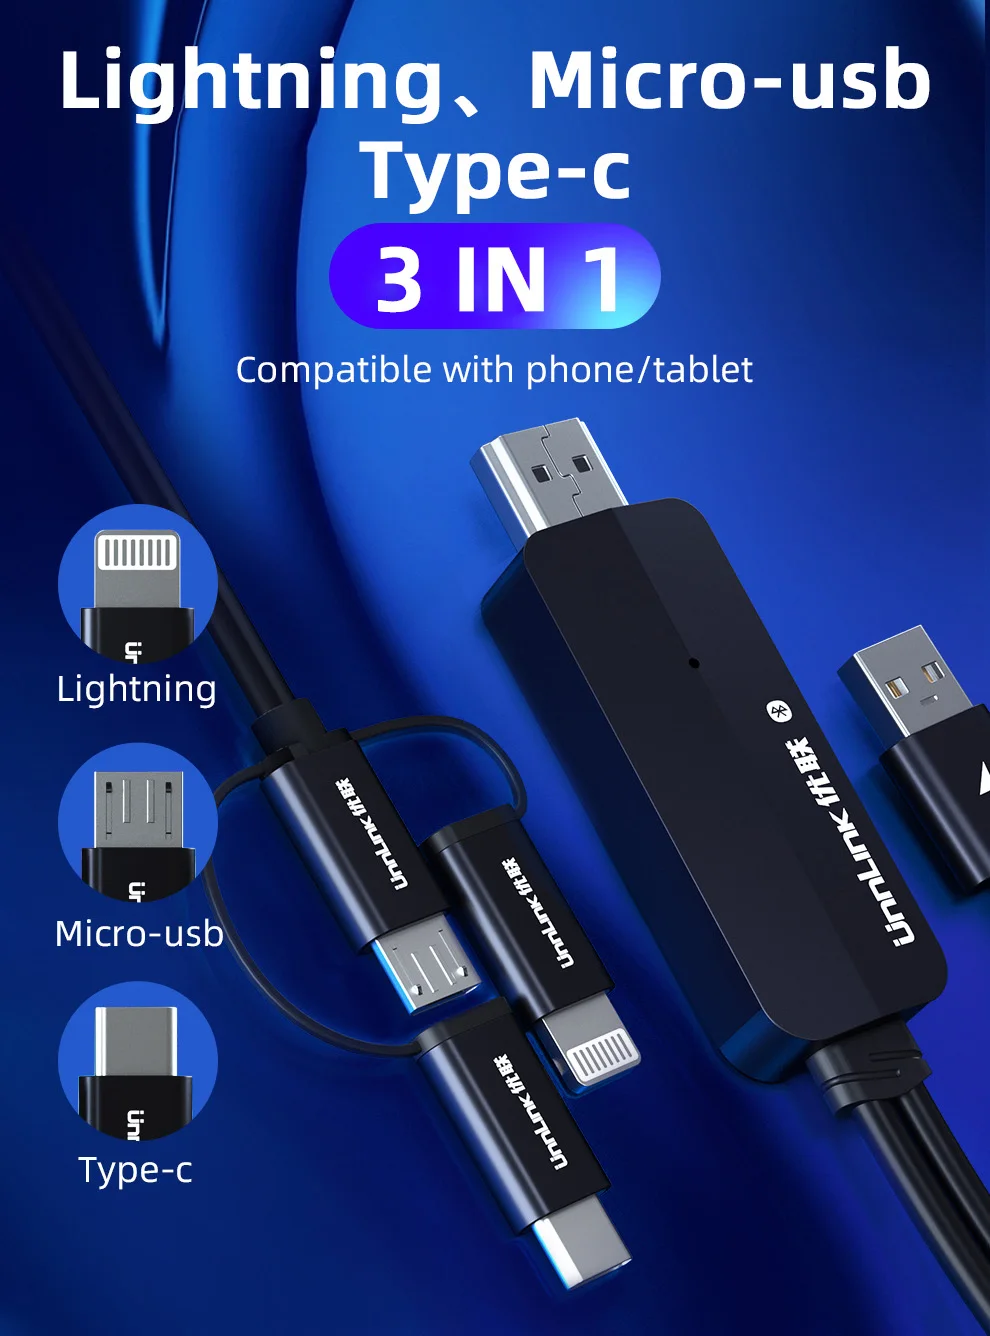 Unnlink USB į HDMI suderinamus Veidrodis Mesti Konvertuoti Kabelis su Garso MHL 